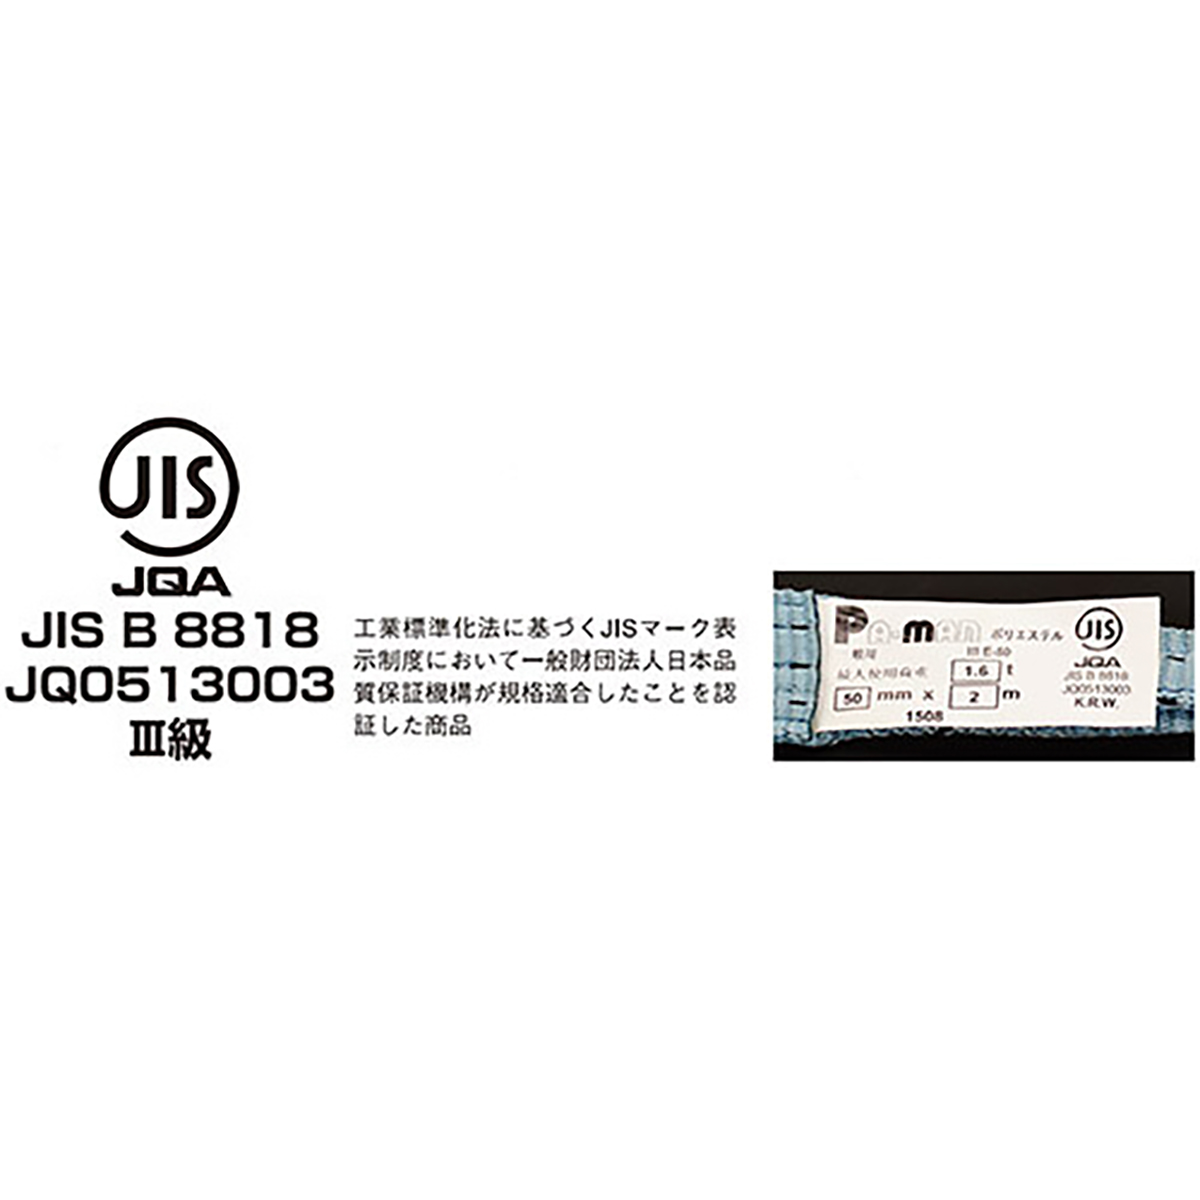 ポリベルトスリング JIS III級 ソフト面付 巾50mm 8m 1本